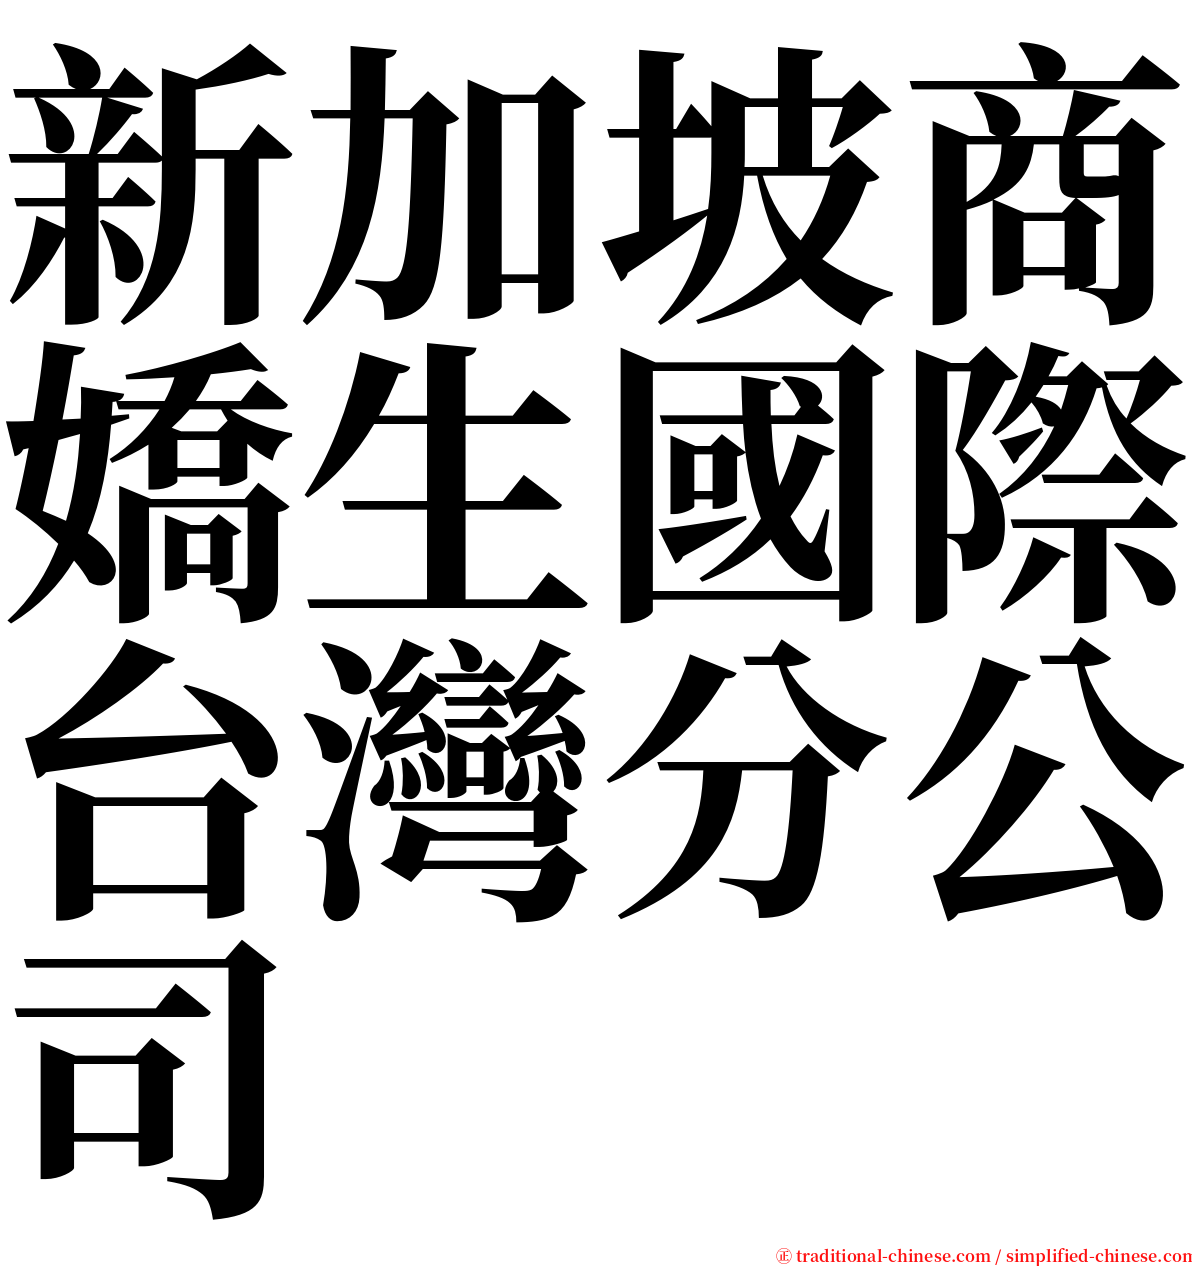 新加坡商嬌生國際台灣分公司 serif font